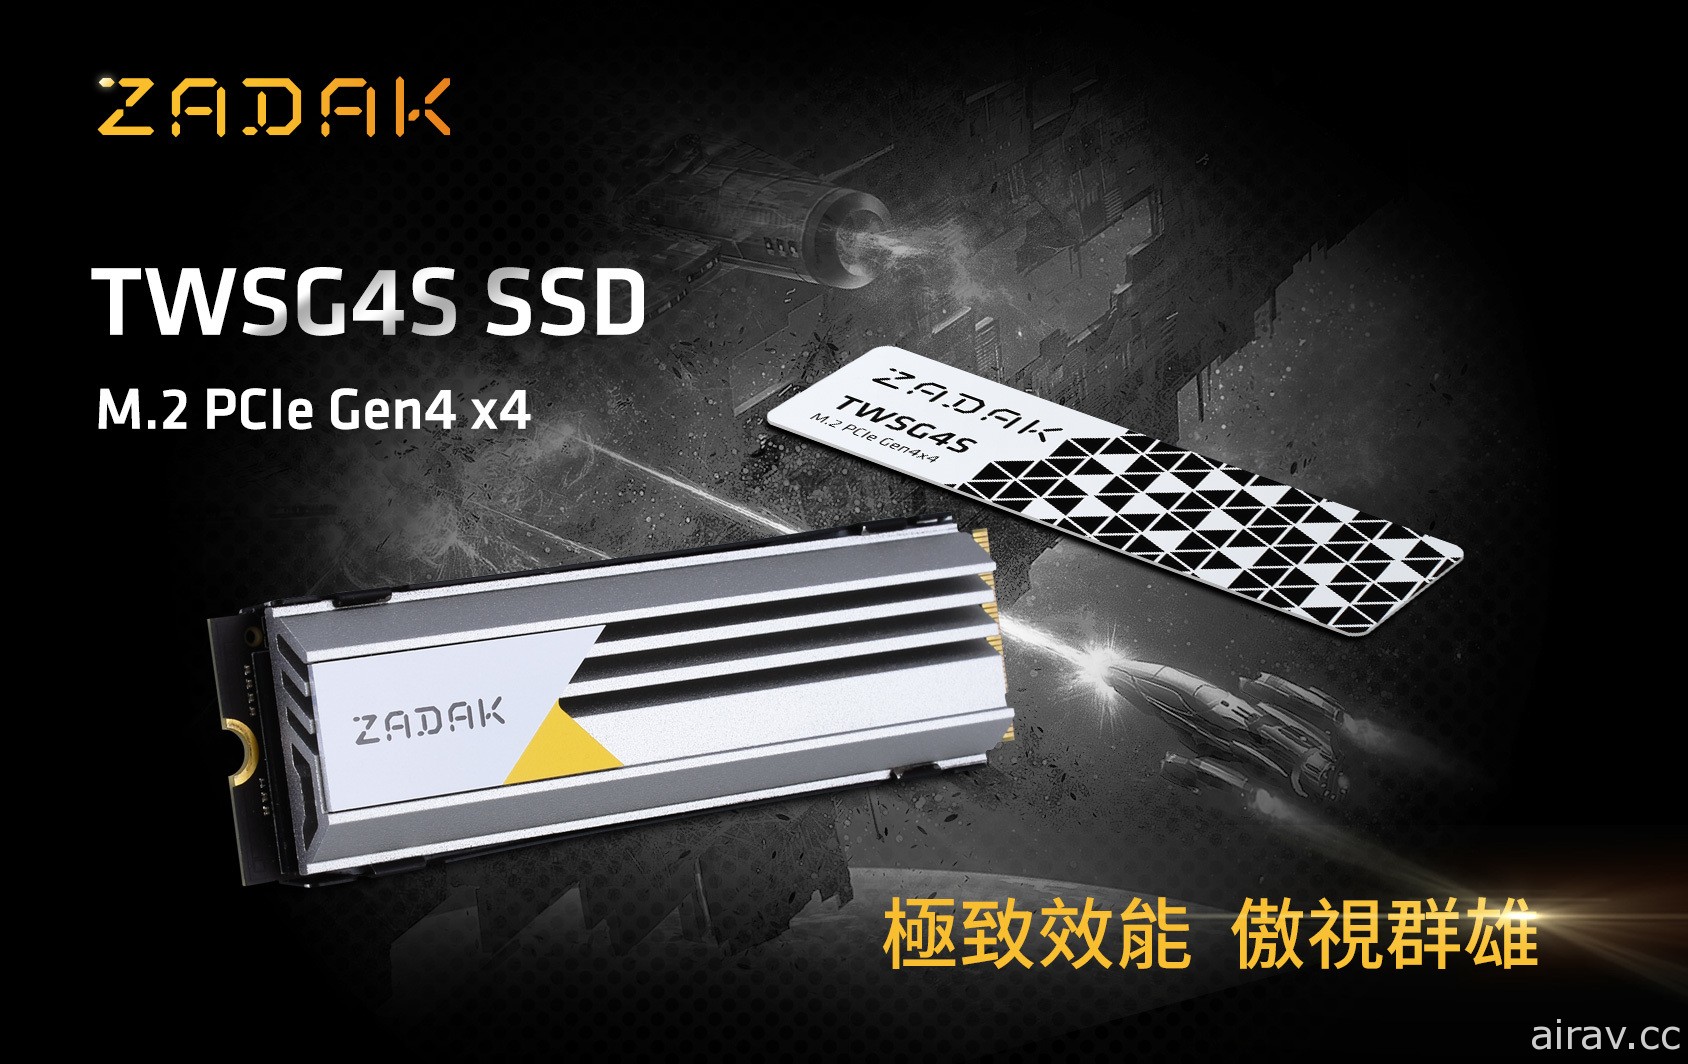 宇瞻电竞品牌 ZADAK 推出 TWSG4S PCIe Gen4 x4 固态硬盘